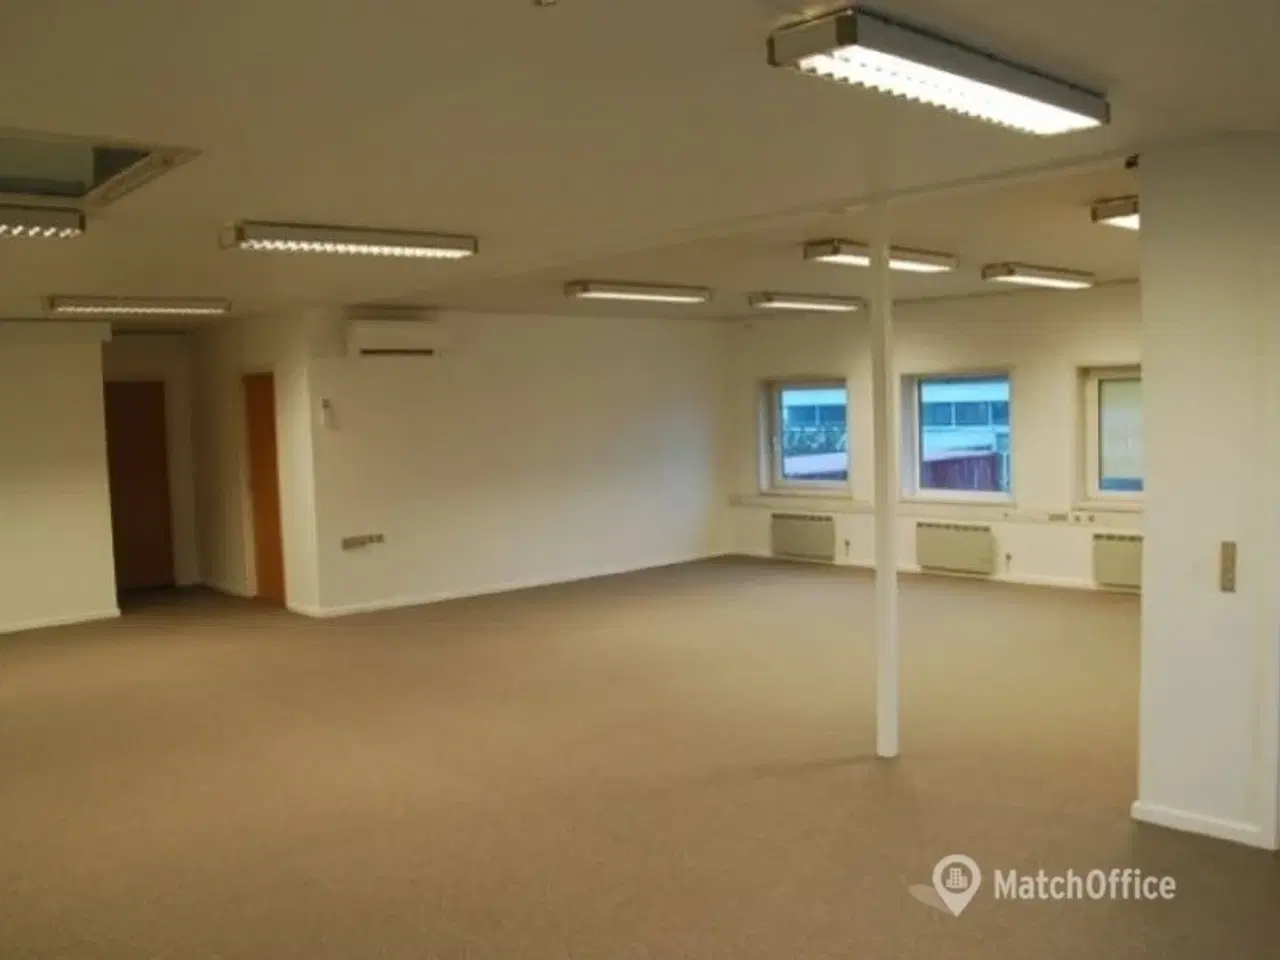 Billede 5 - Erhverv med kontorlokaler i Humlebæk erhvervsområde